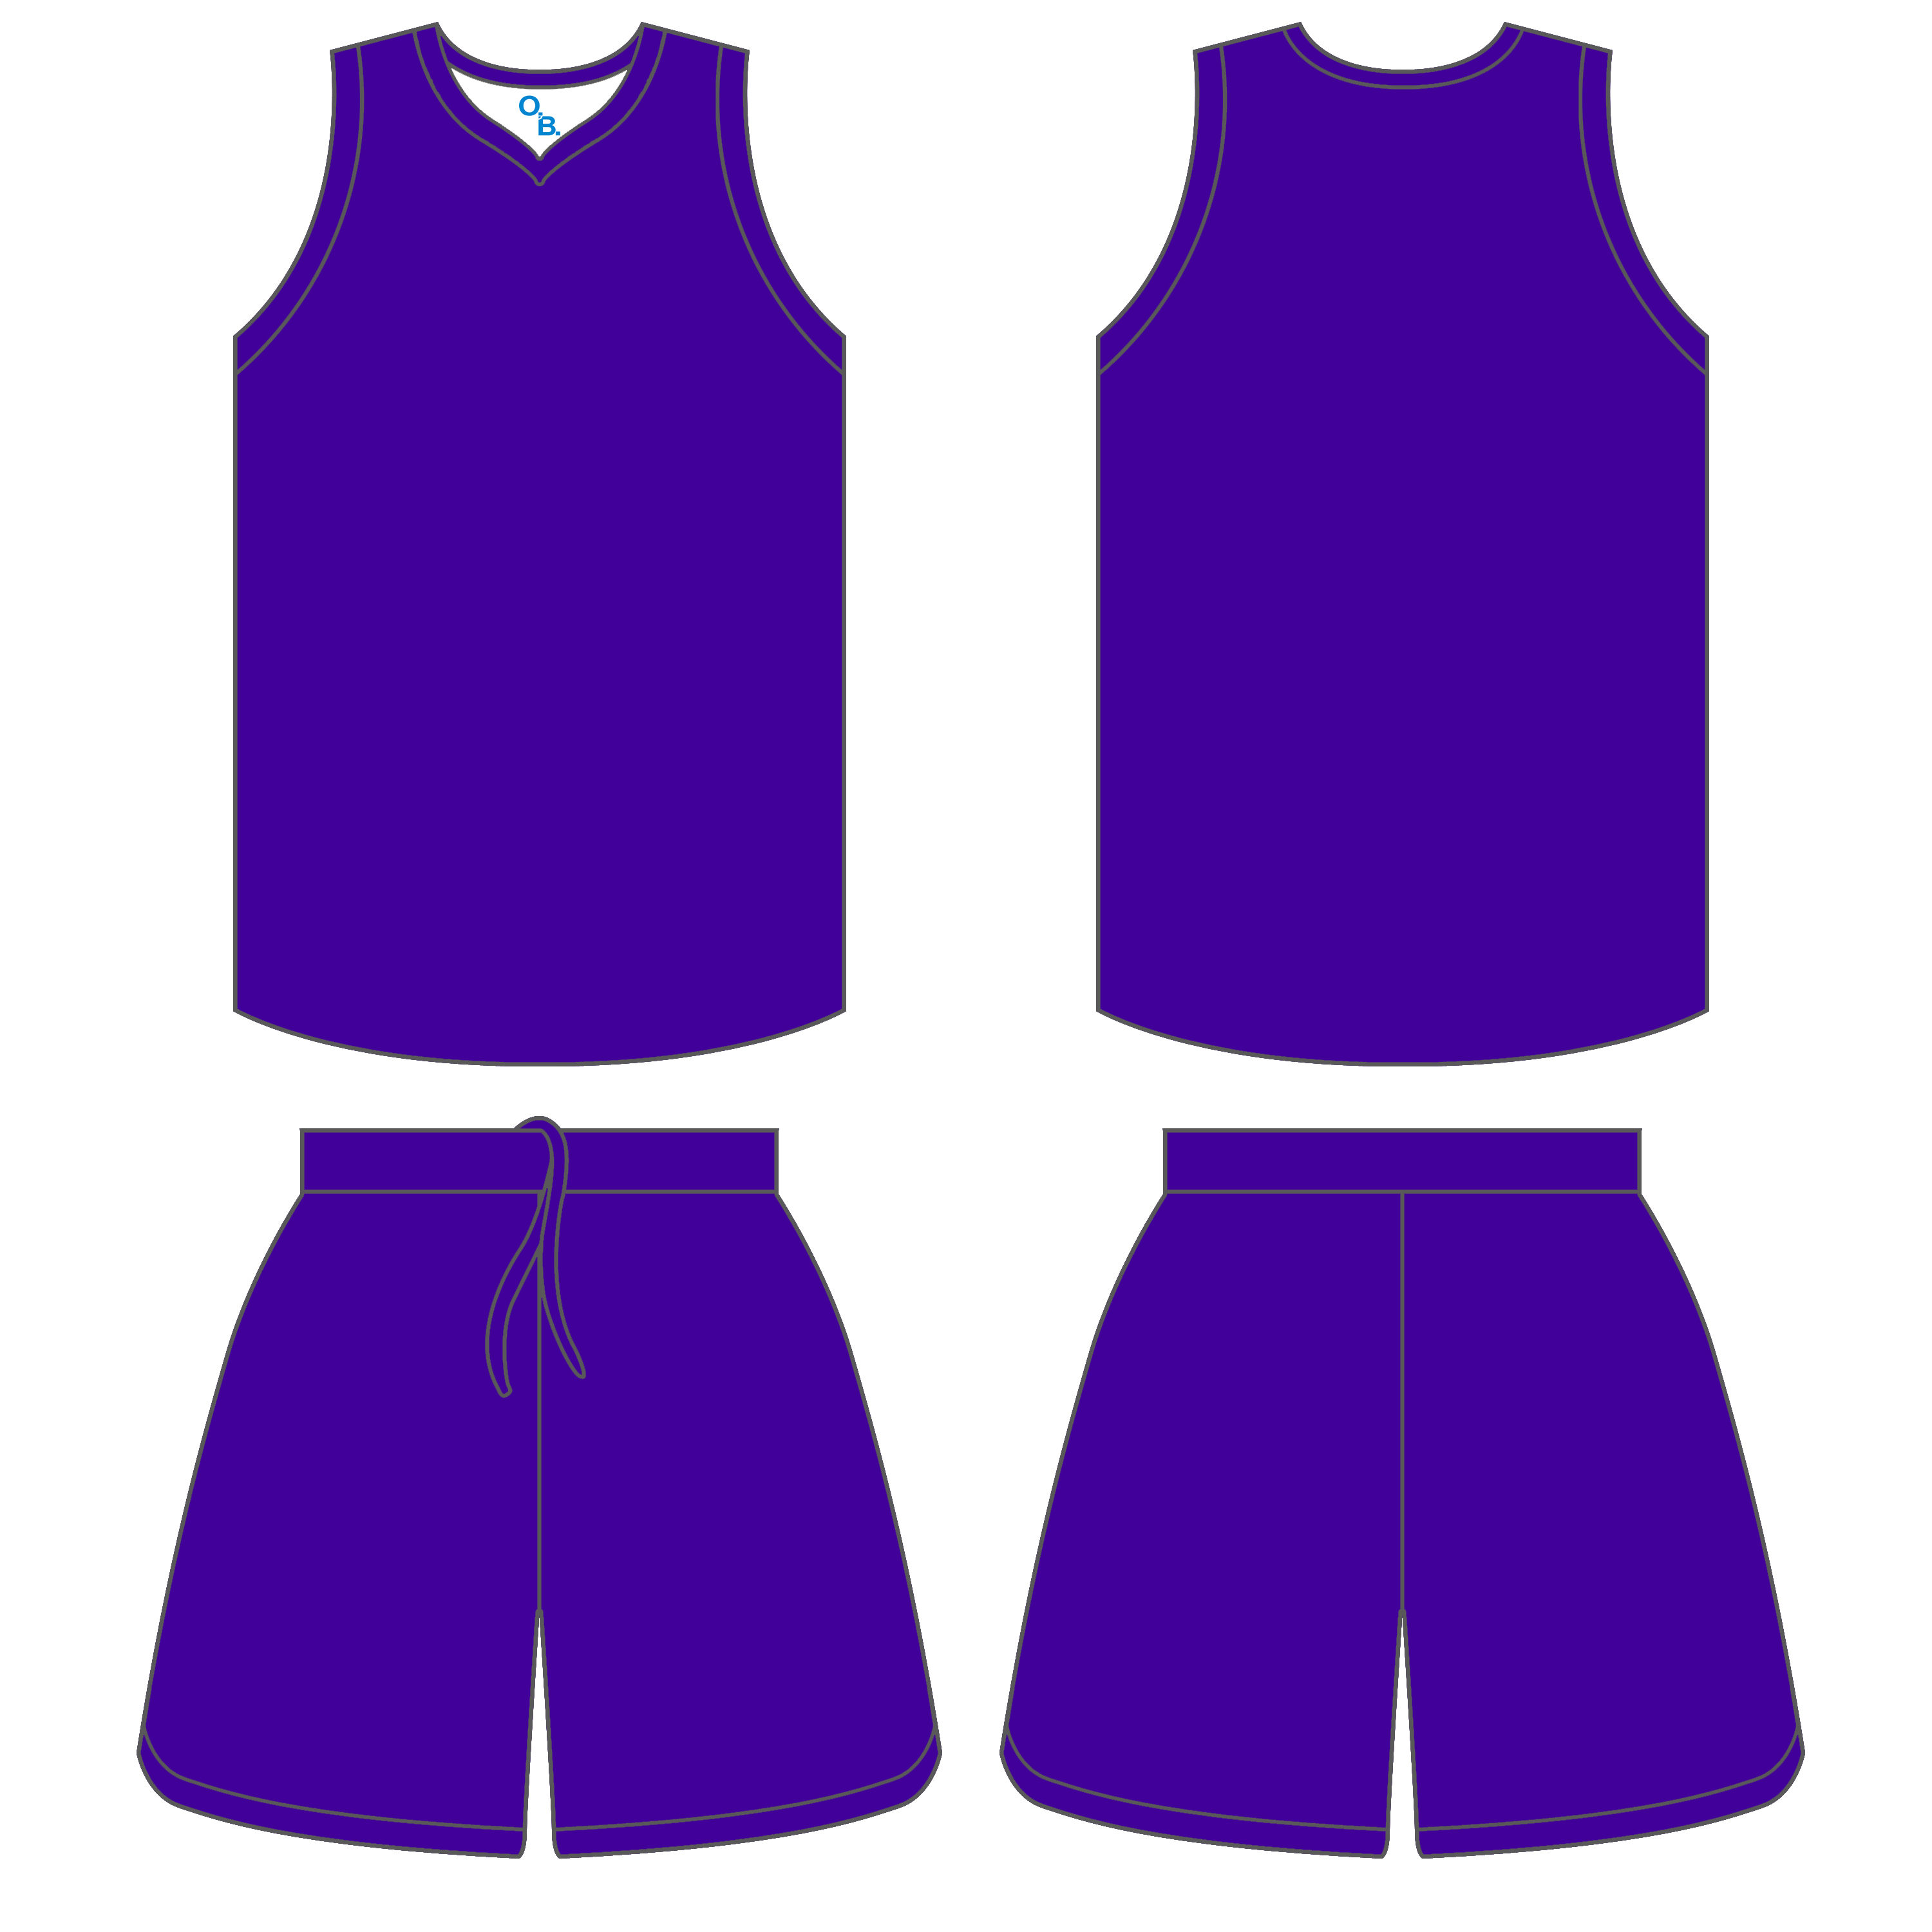 basketball uniform jersey psd template > Off-21% With Blank Basketball Uniform Template